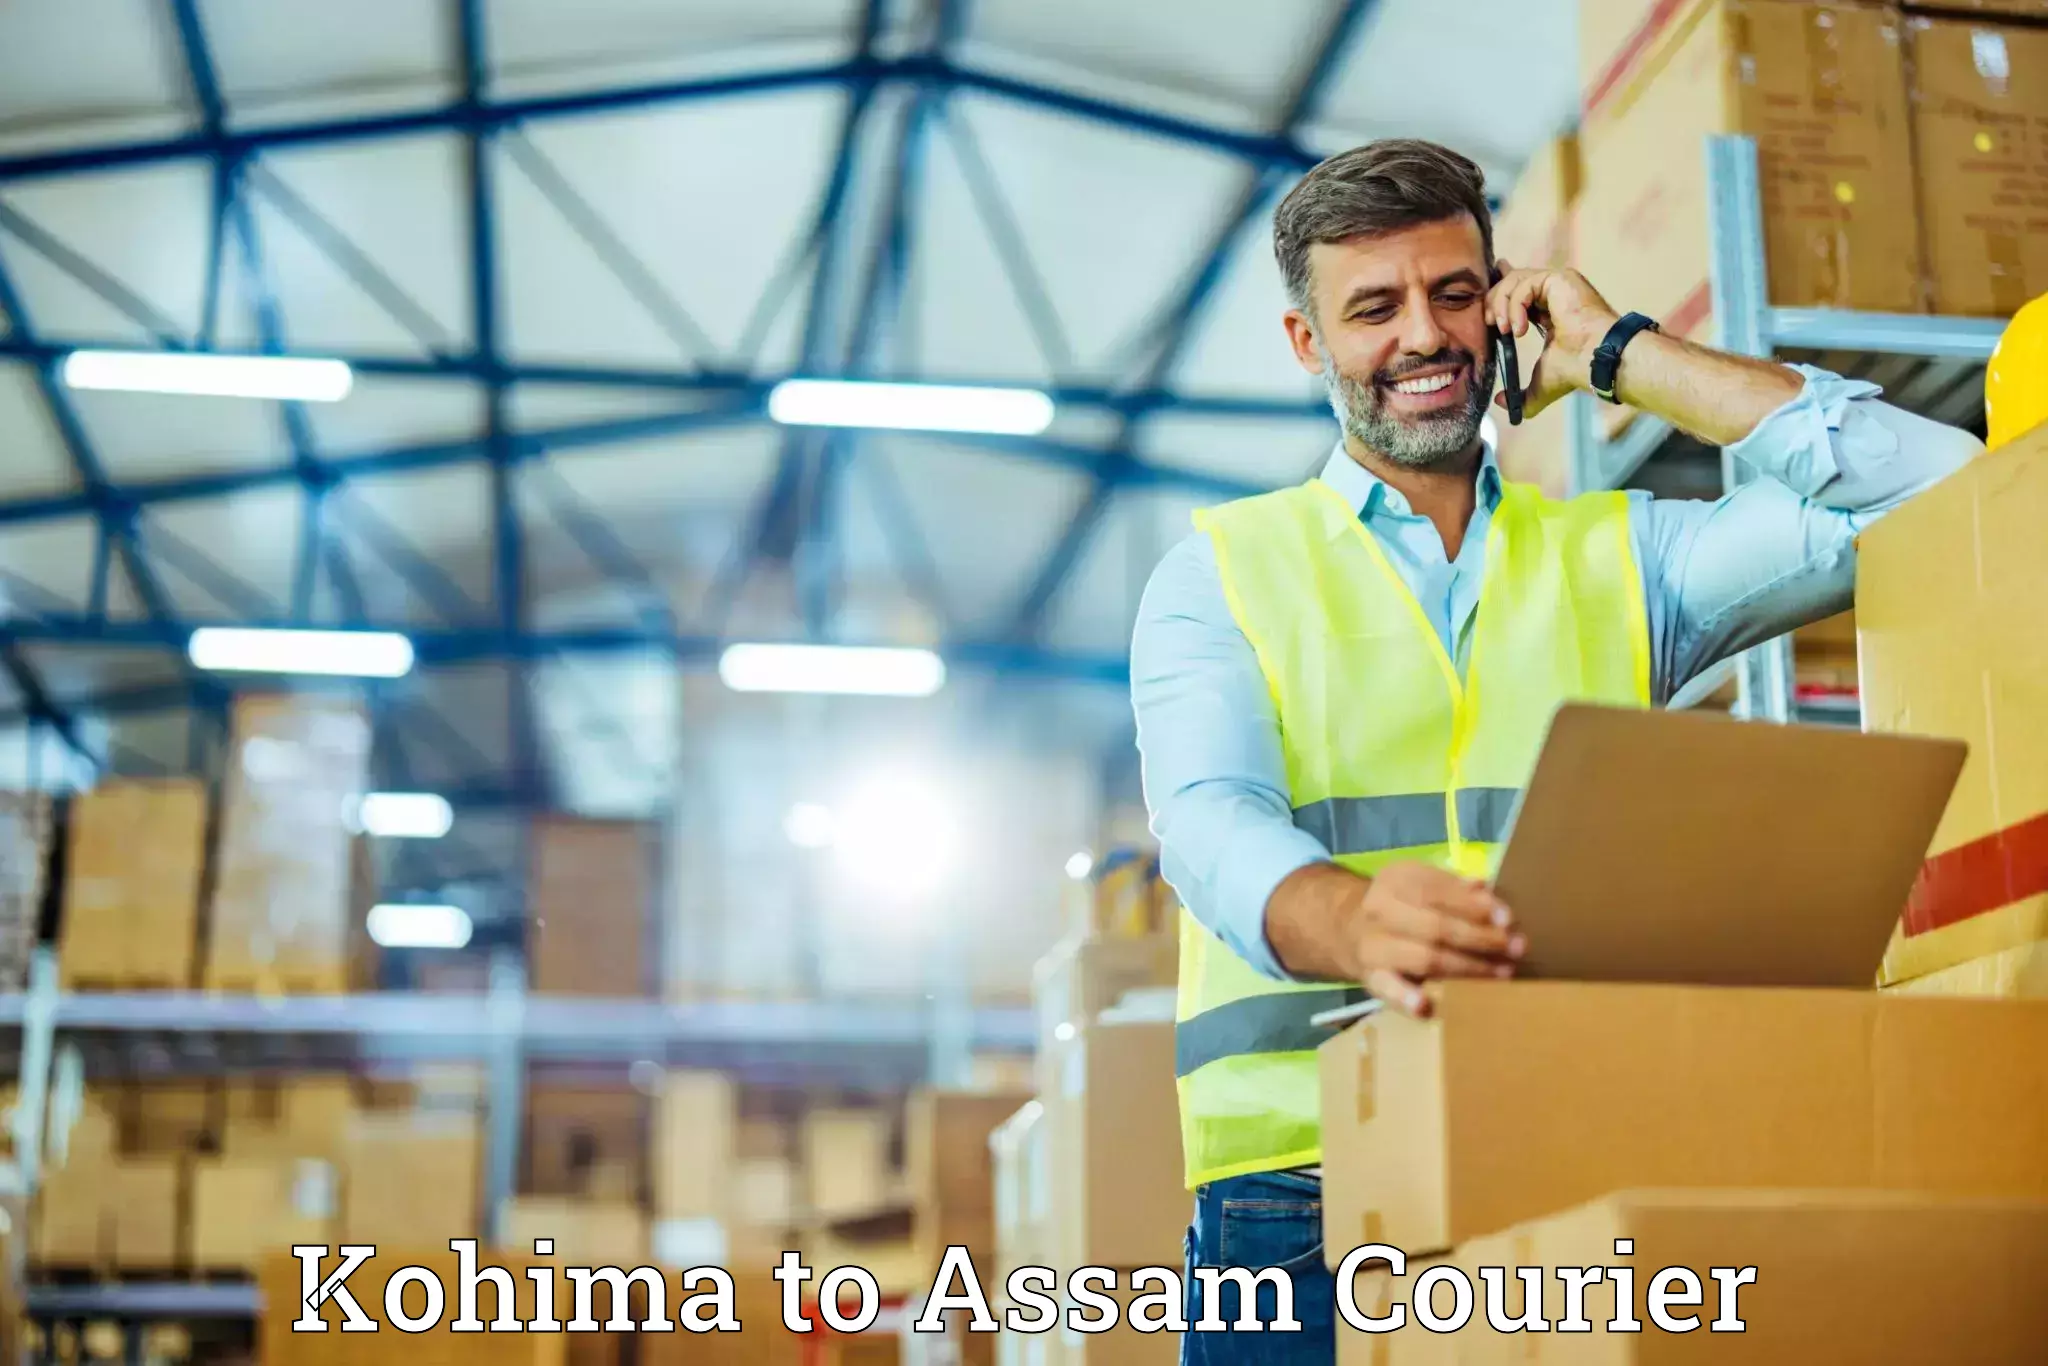 Expert furniture movers Kohima to Tinsukia